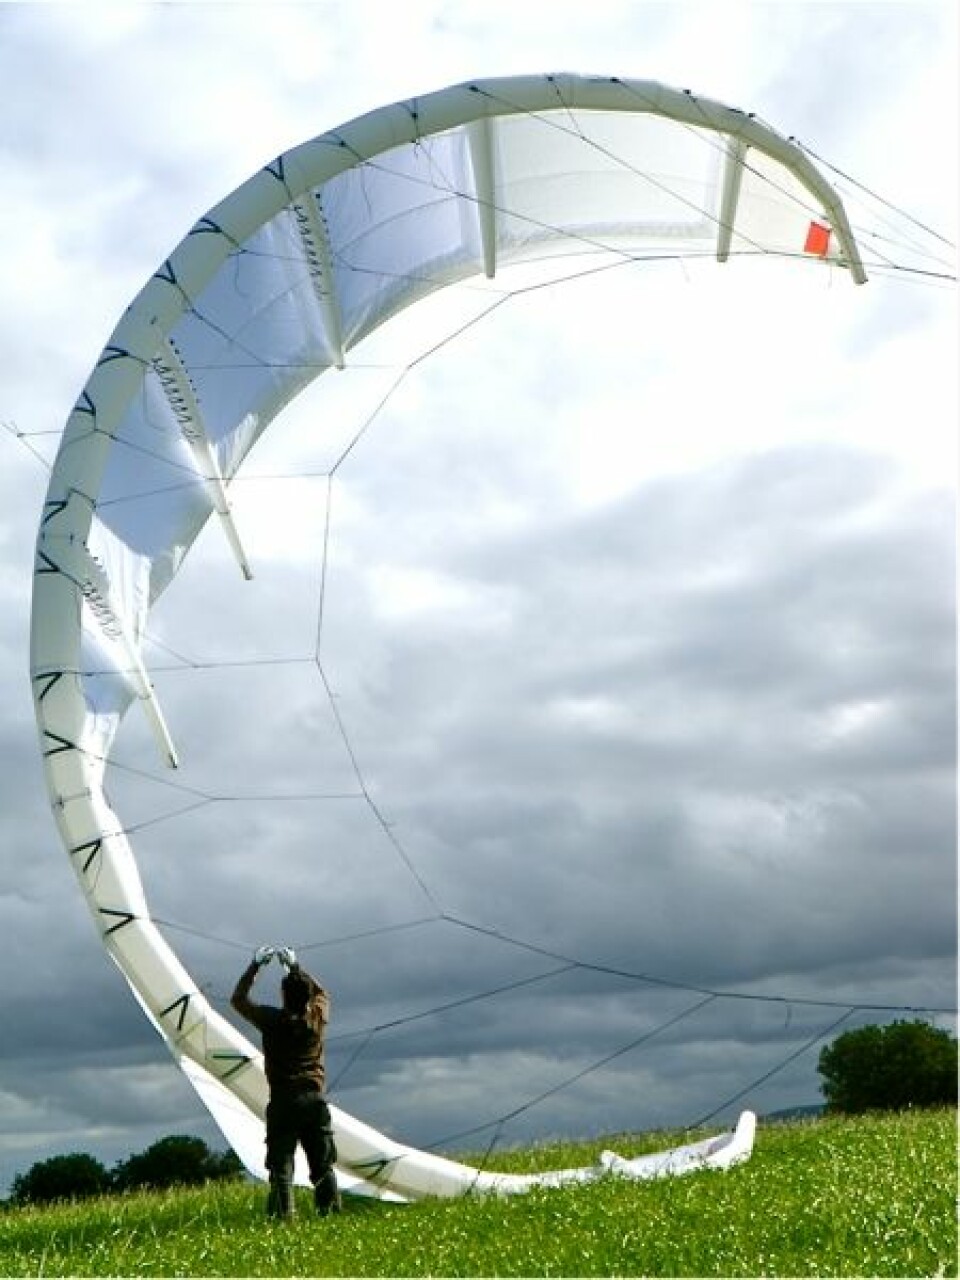 Kitemills tester av vanlige kiter til sportsbruk har vist at disse kan ha trekkrefter på over 4,5 tonn. En sports-kite kan i dag bringe kiteren opp i over 100 kilometer i timen eller 15 meter opp i lufta. Slike kiter er laget av sterke materialer og kan ha en overflate på opptil 20 kvadratmeter. Norge kan om noen år få hele parker av store flyvende drager (kiter) som produserer energi. (Foto: Kitemill)